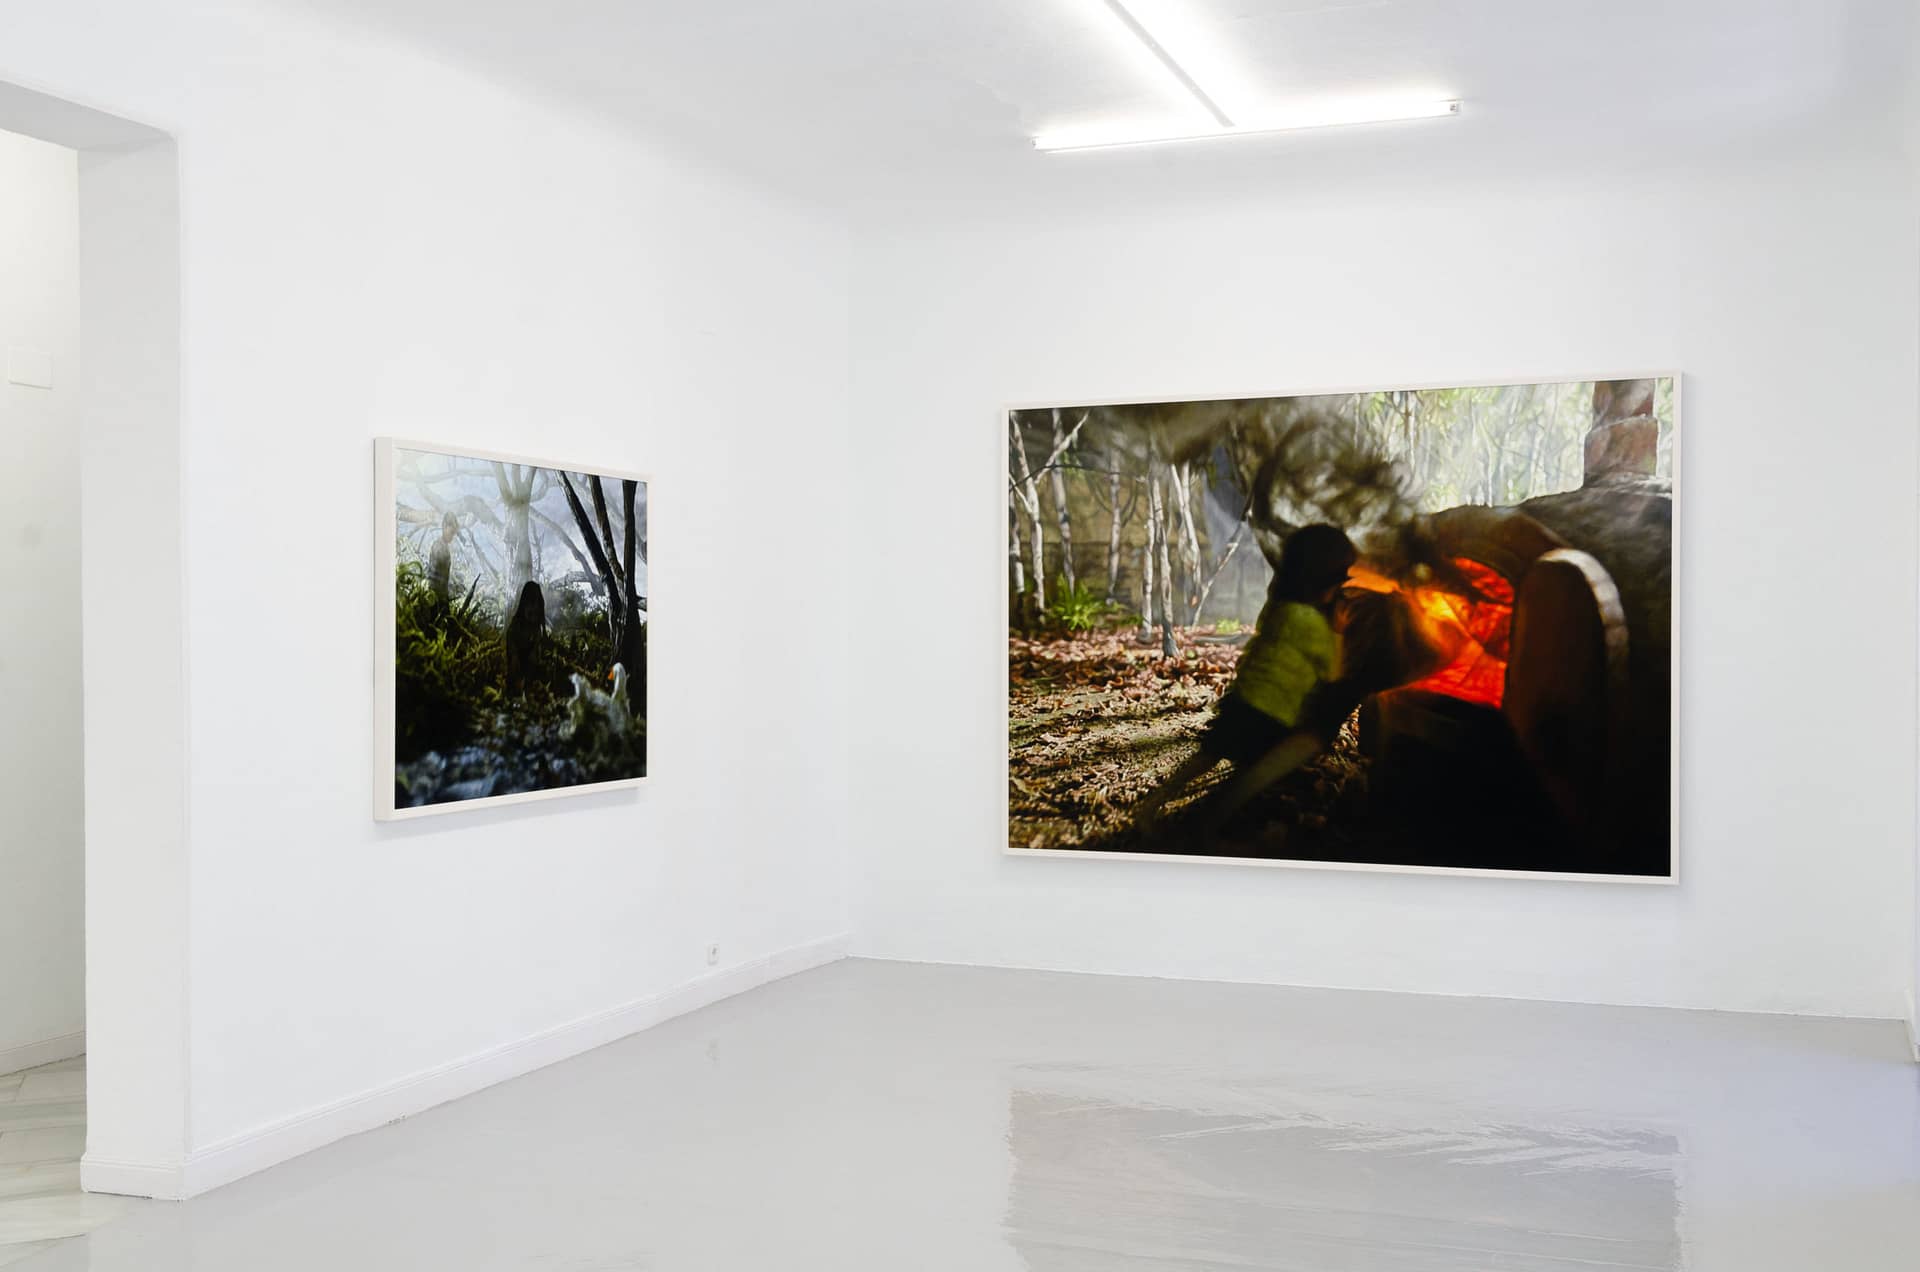 Philipp Fröhlich, Exhibition View, Hänsel und Gretel, Galeria Juana de Aizpuru, 2019